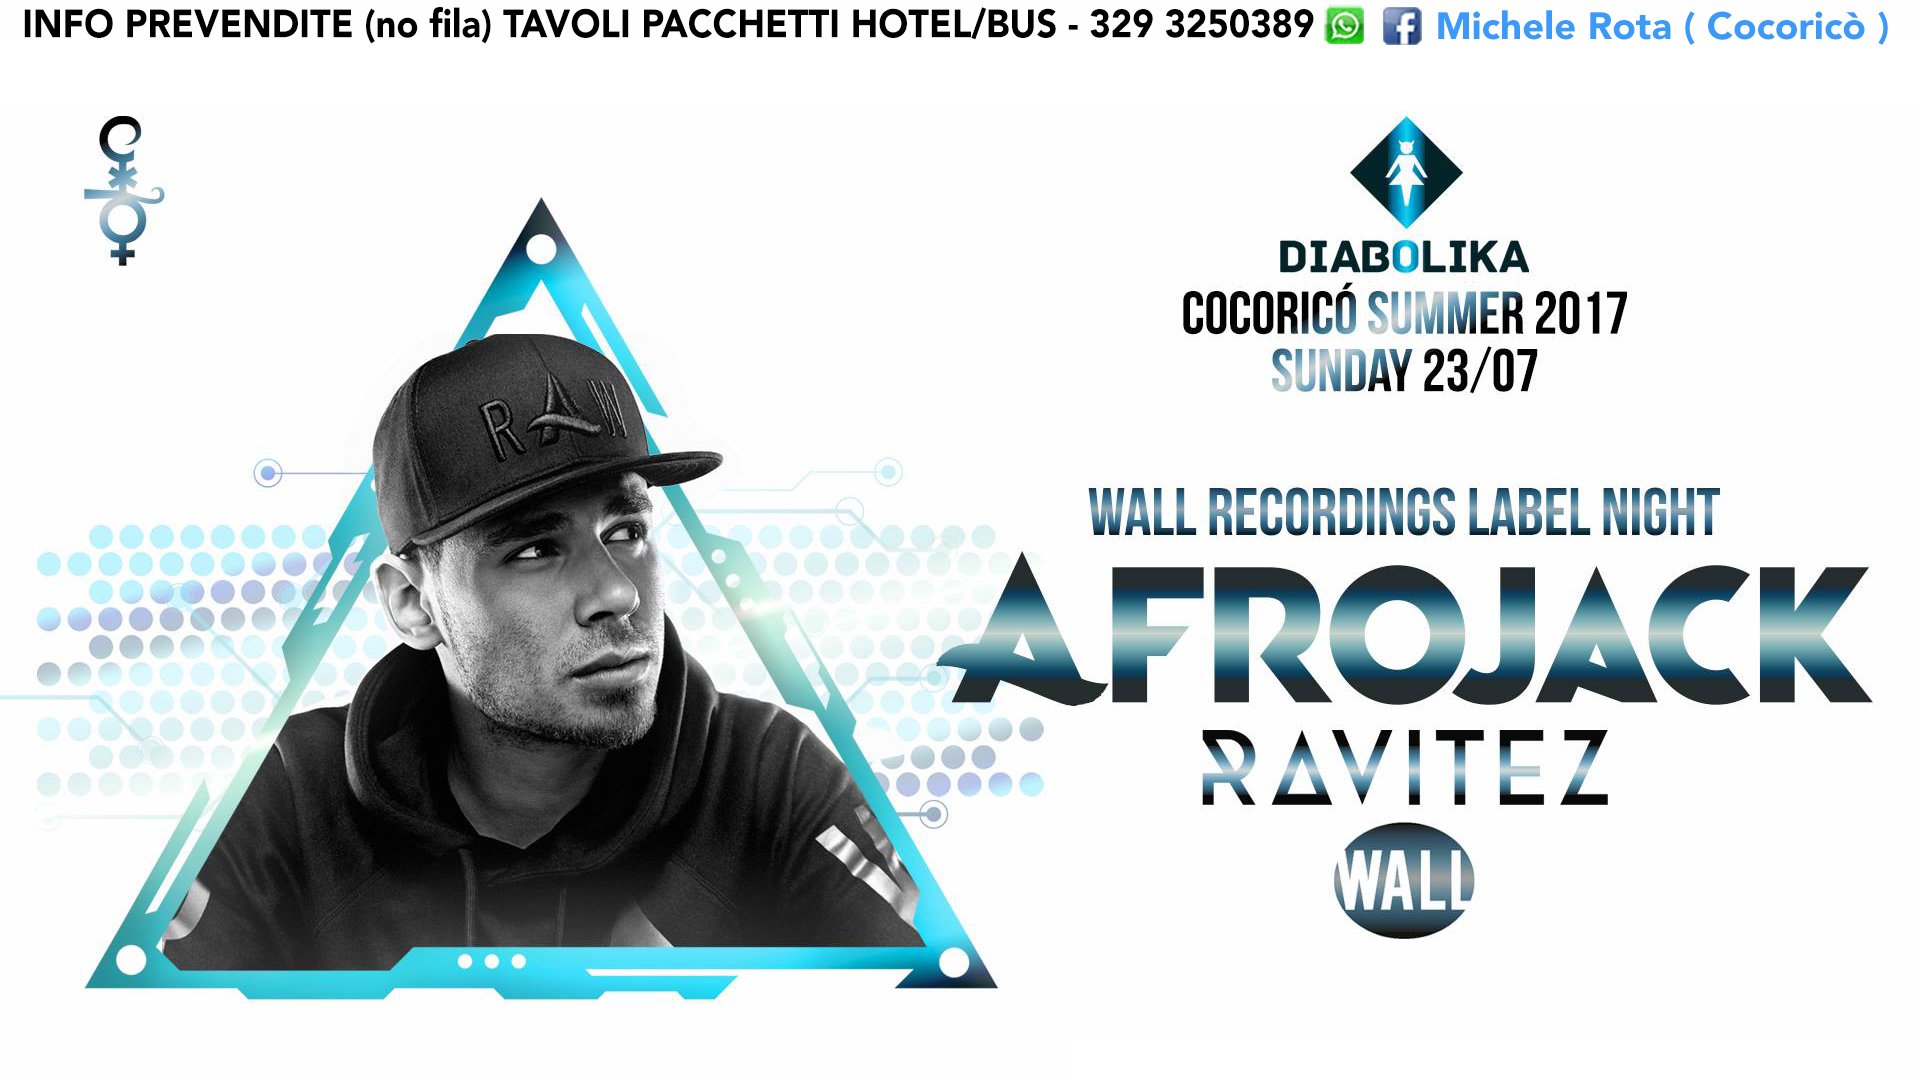 Afrojack Cocorico Riccione 23 Luglio 2017 Ticket Tavoli Pacchetti Hotel